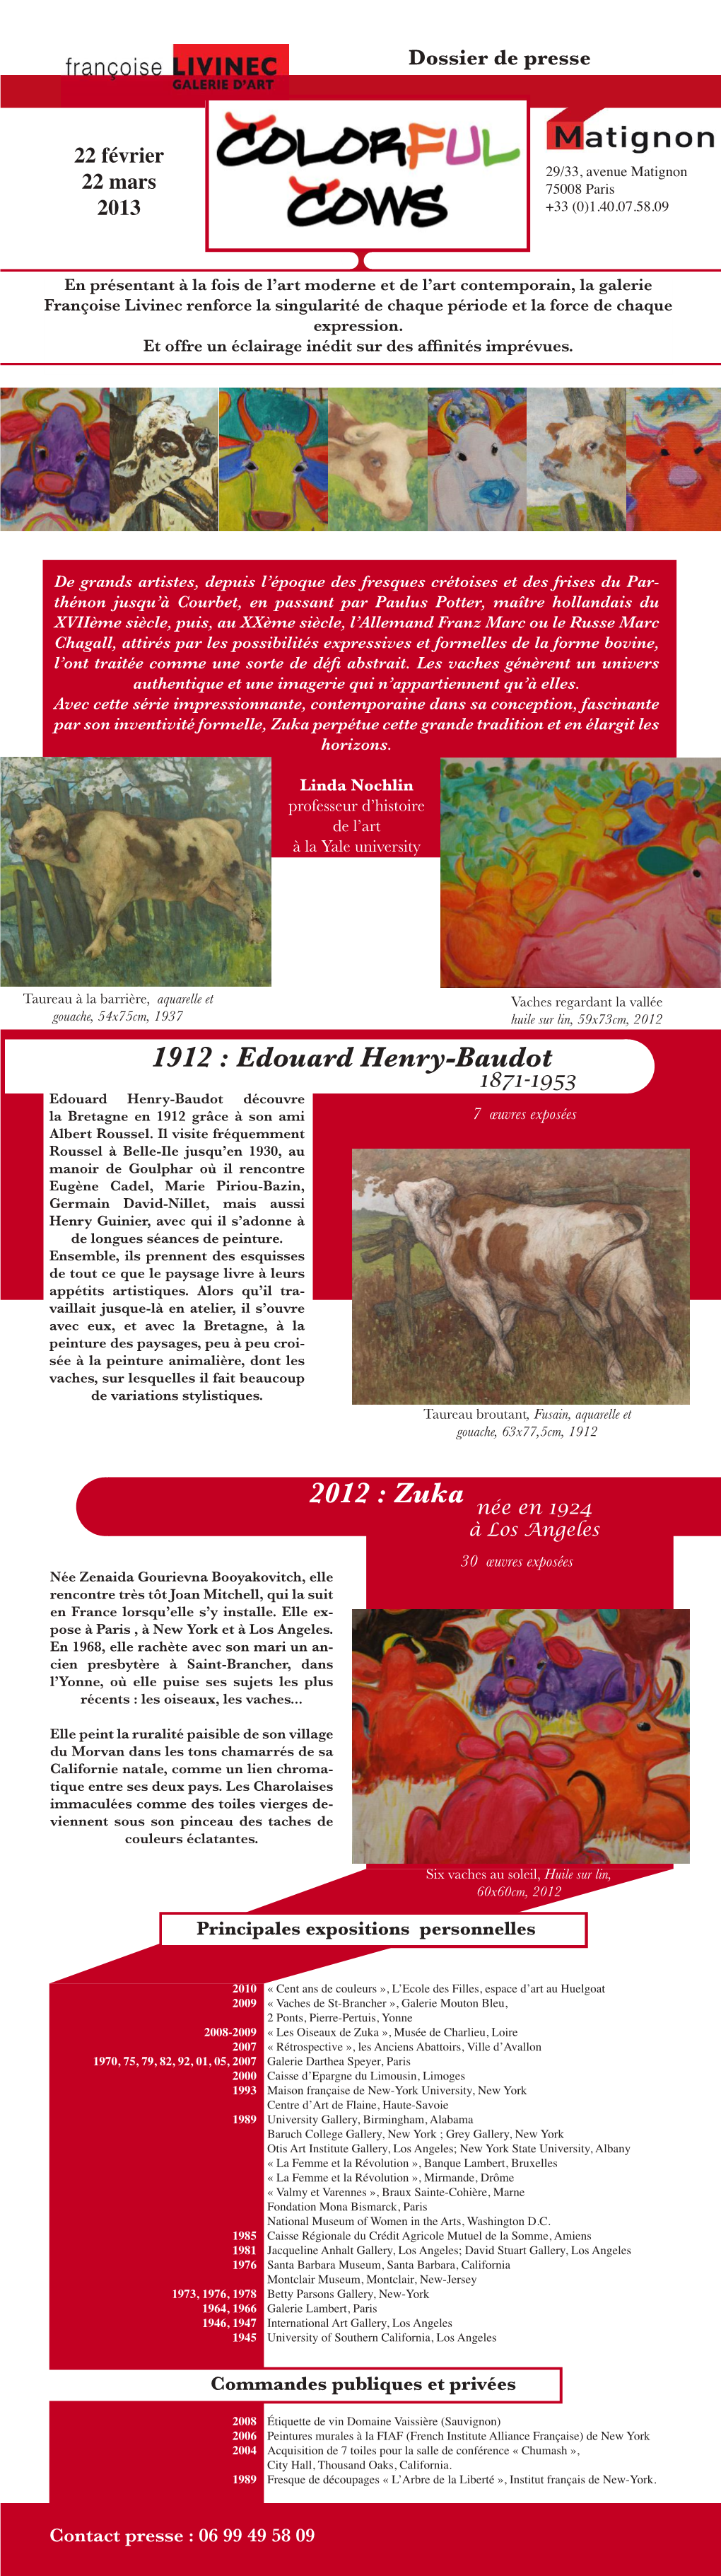 1912 : Edouard Henry-Baudot 2012 : Zuka